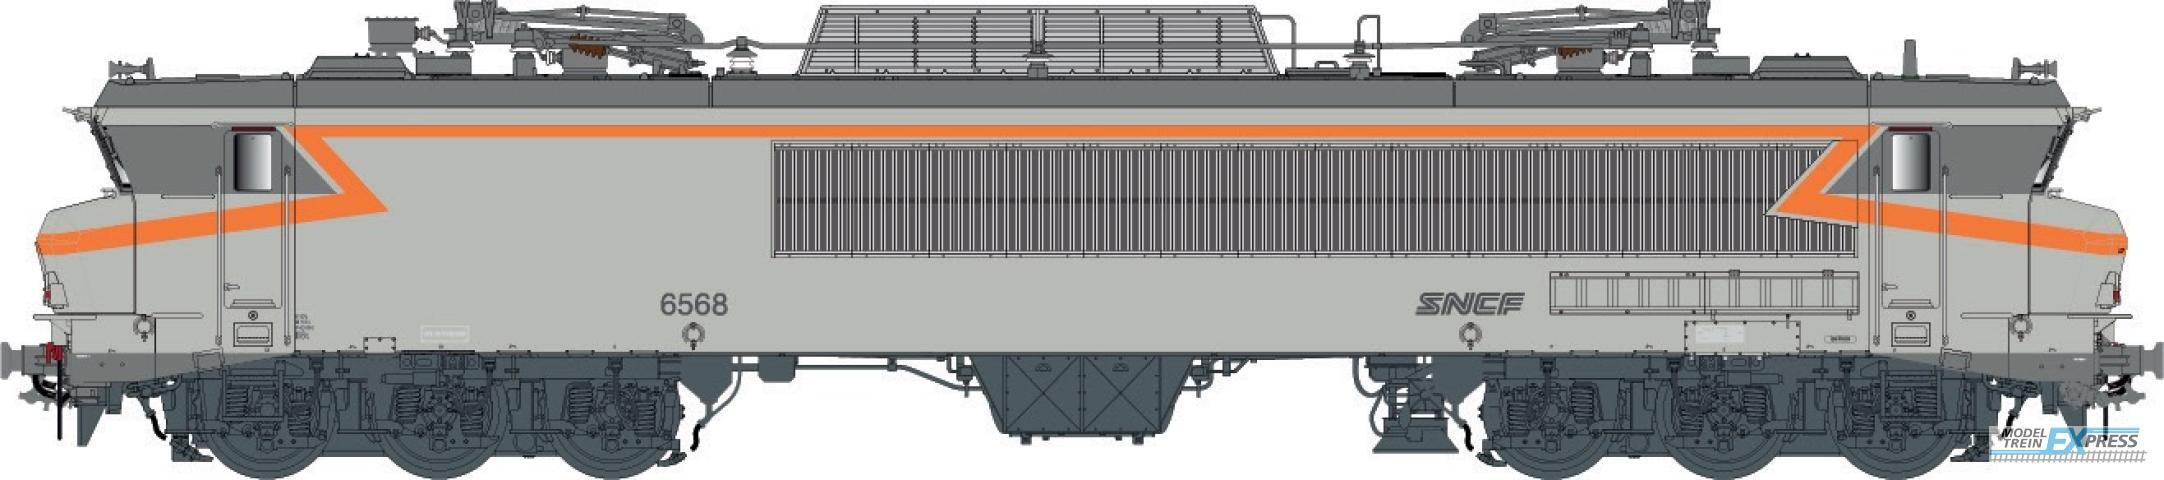 LS Models 10833S CC 6558, concrete gray, orange, noodle logo, Lyon-Mouche depot  /  Ep. IV-V  /  SNCF  /  HO  /  AC SOUND  /  1 P.